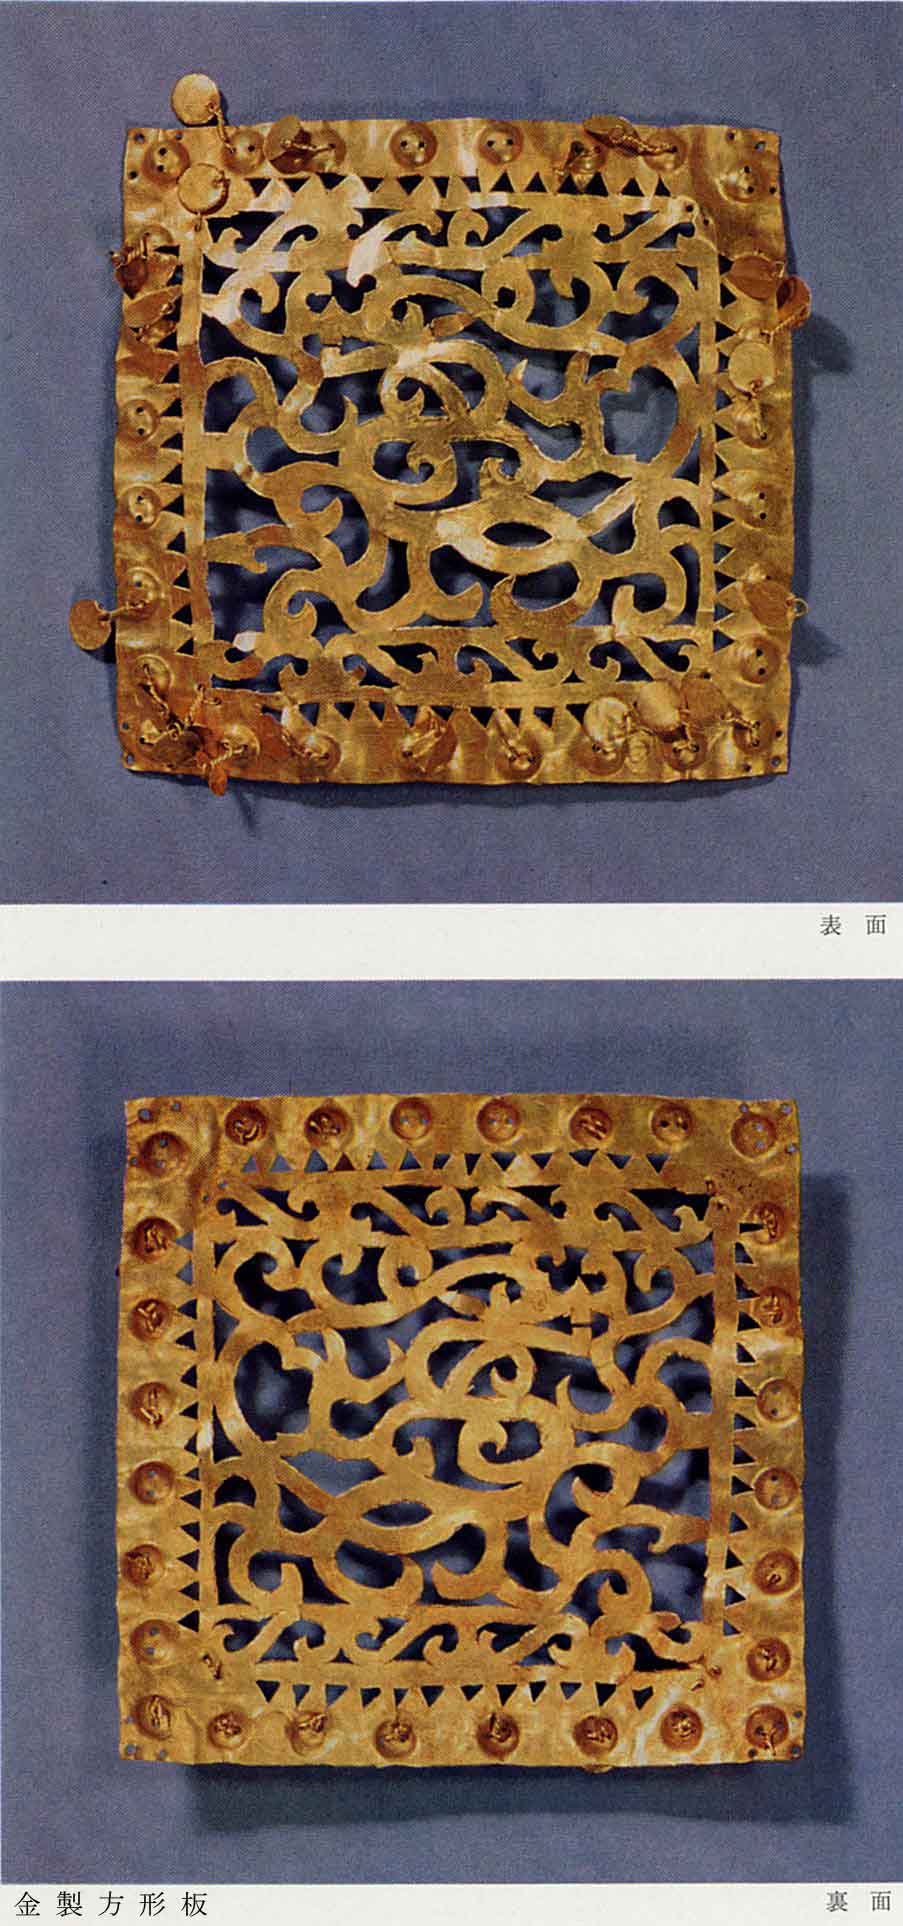 金で作られた正方形の模様がある板の表と裏の2枚が撮影された、126号PL22金製方形板の写真